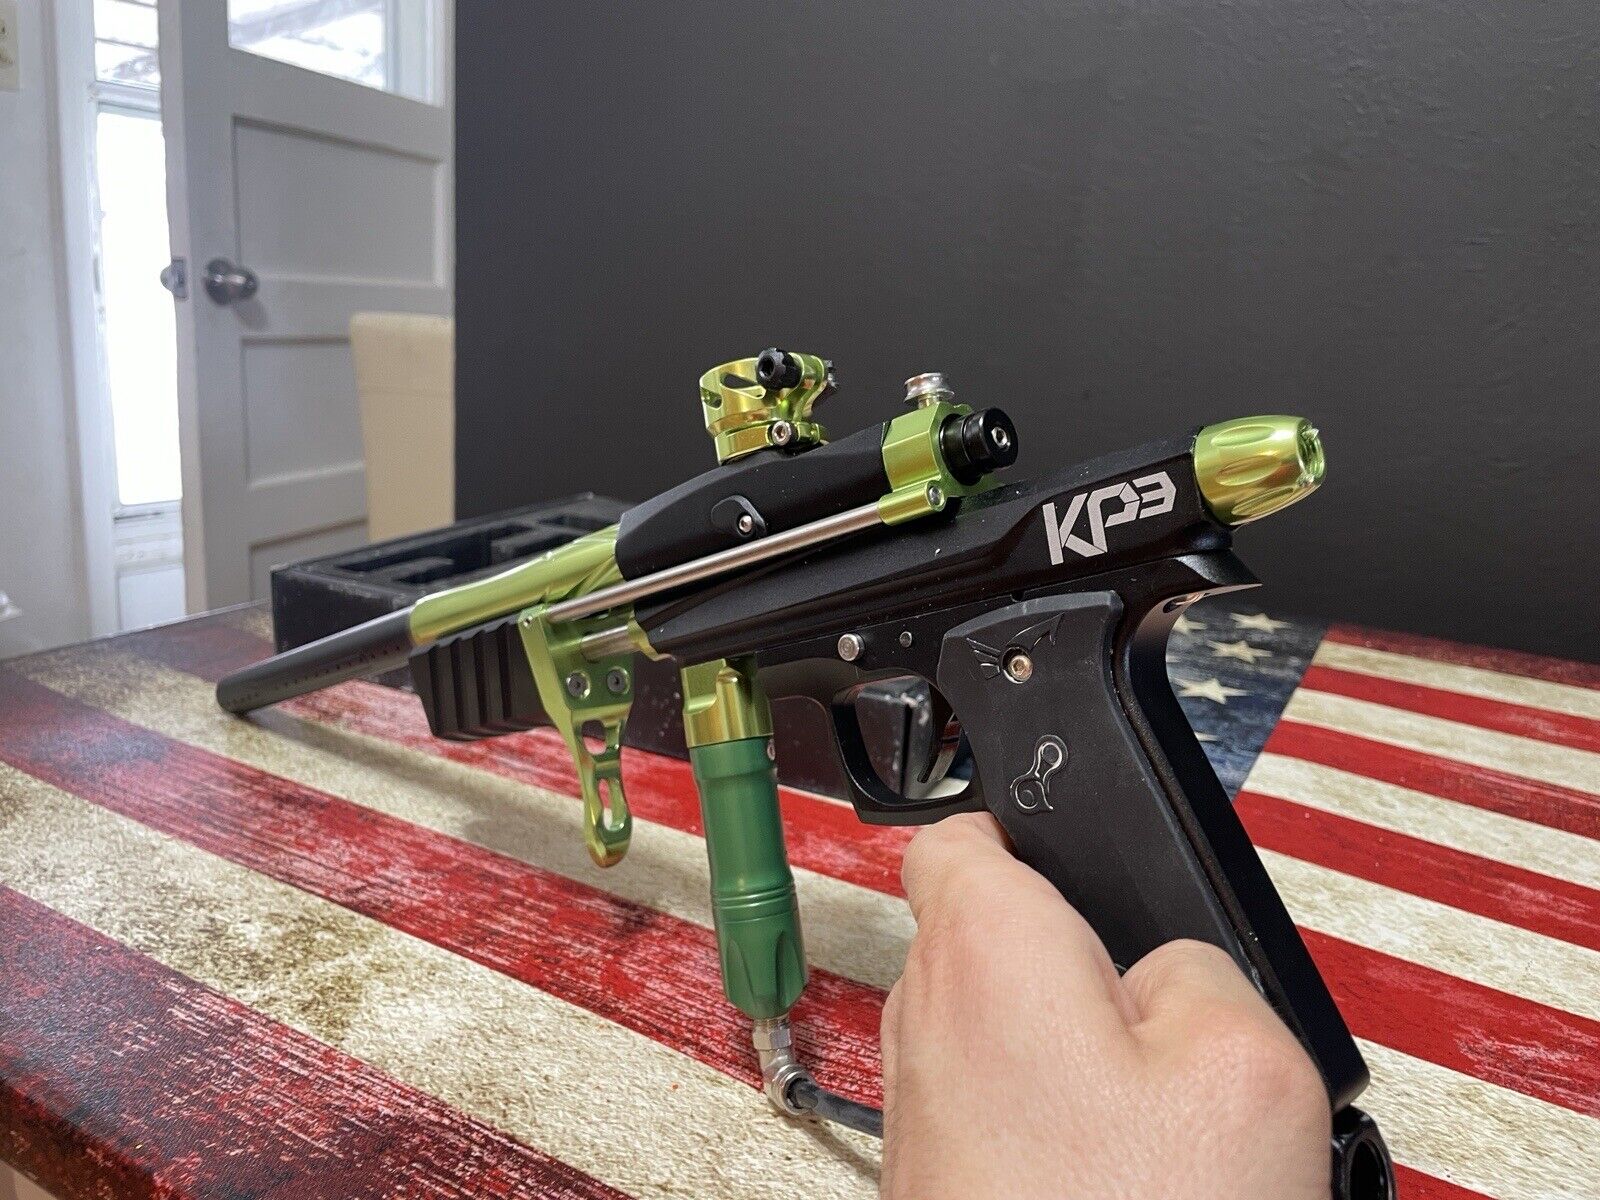 kp3 Pump Action paintball gun